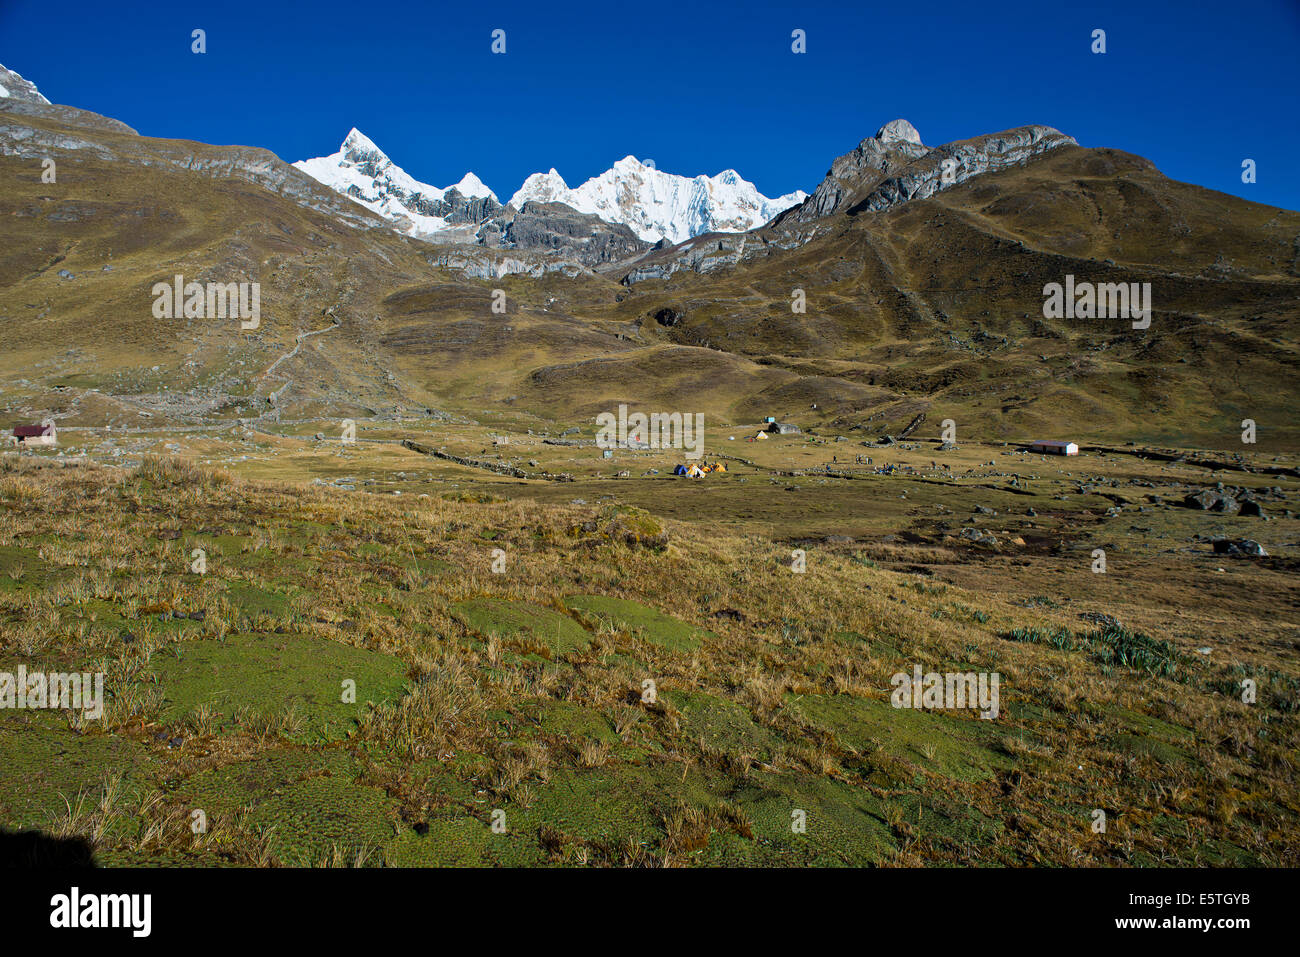 Zeltlager auf der Rückseite der schneebedeckten Mt Trapecio und Mt Nevados Jurau, Cordillera Huayhuash Gebirge Nord-Peru Stockfoto